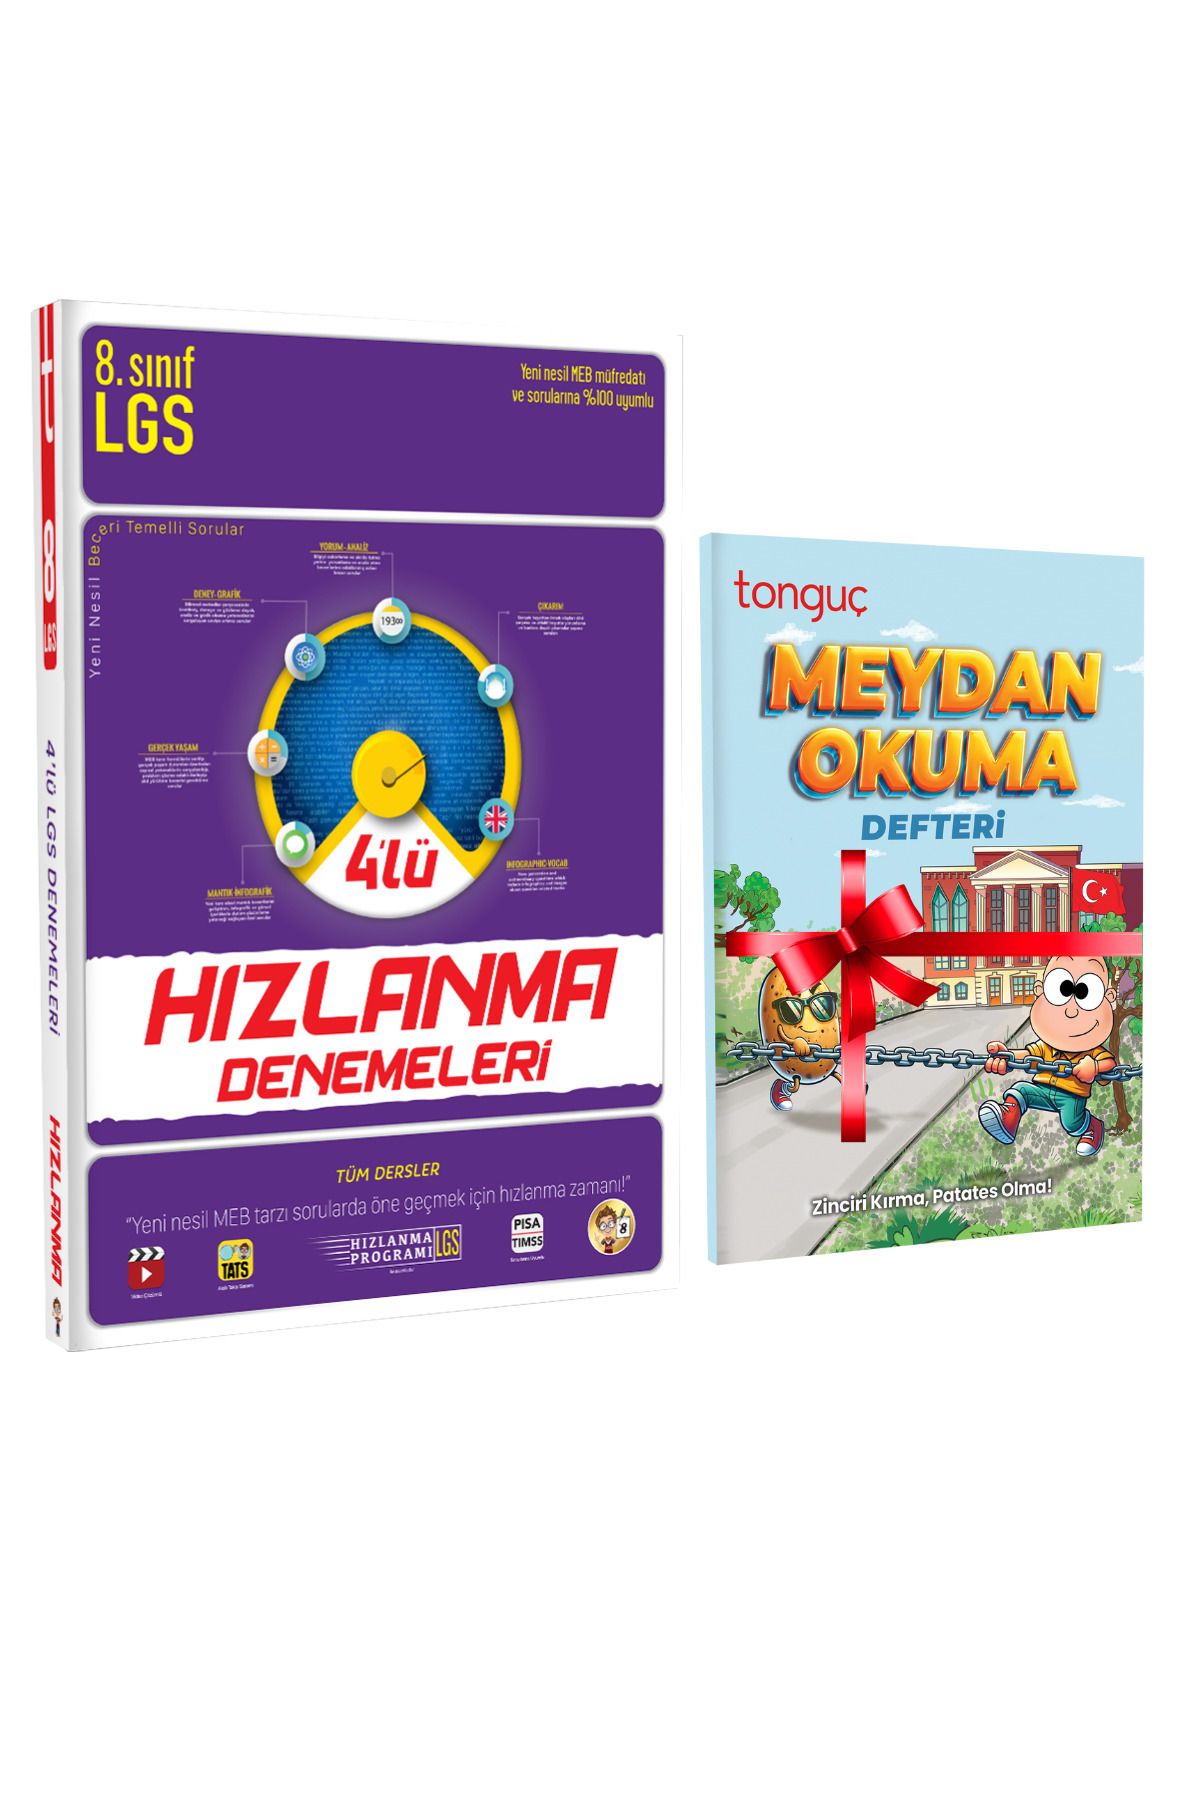 Tonguç Yayınları LGS 4'lü Hızlanma Denemeleri Ve Meydan Okuma Defteri Hediyeli